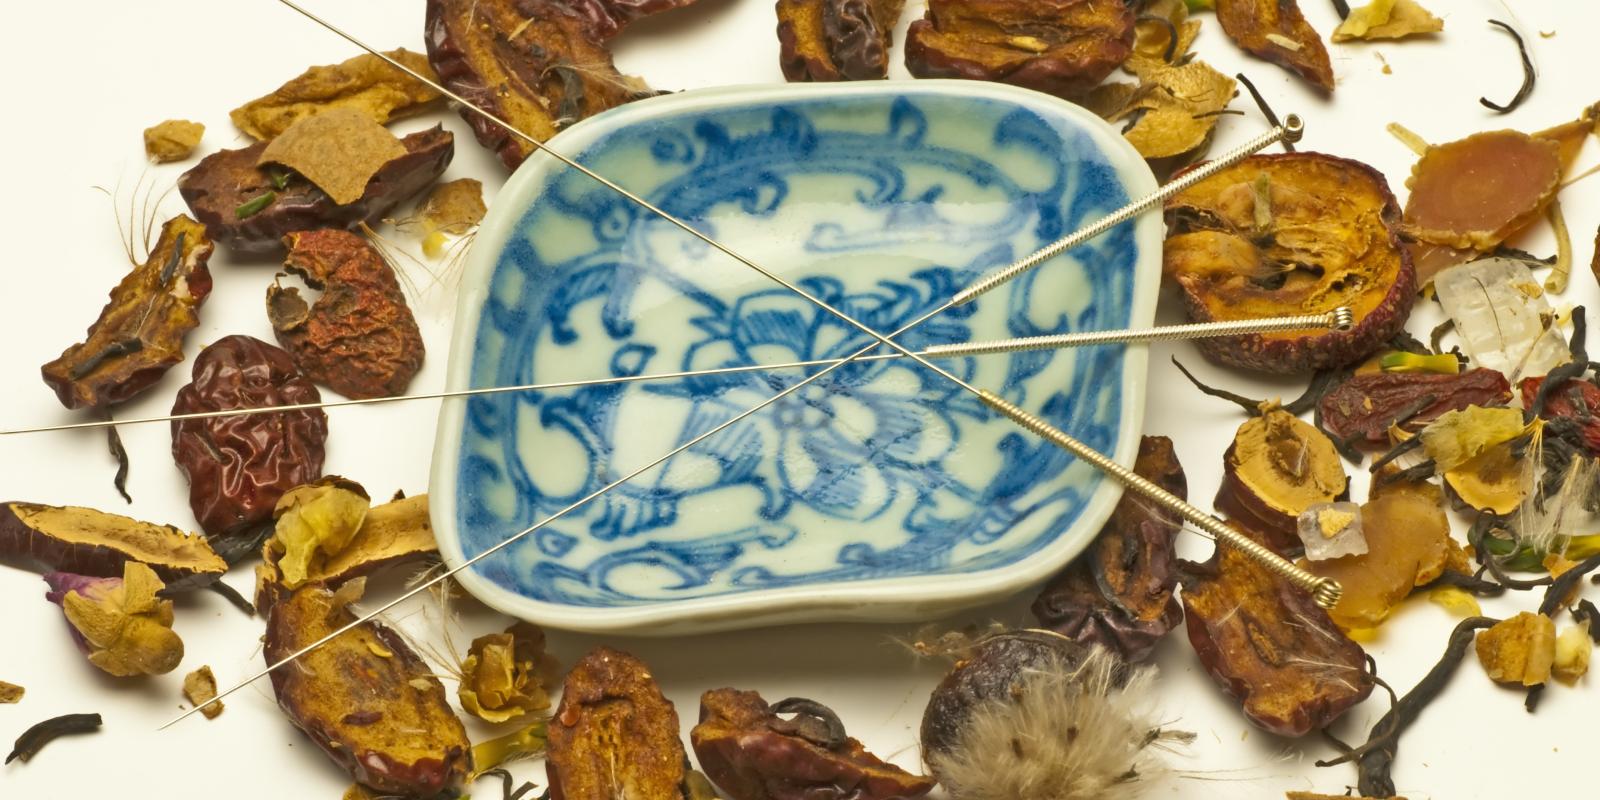 Bilde av akupunkturnåler som ligger oppå en skål med asiatiske skrifttegn og av tørkede urter ligger rundt skålen